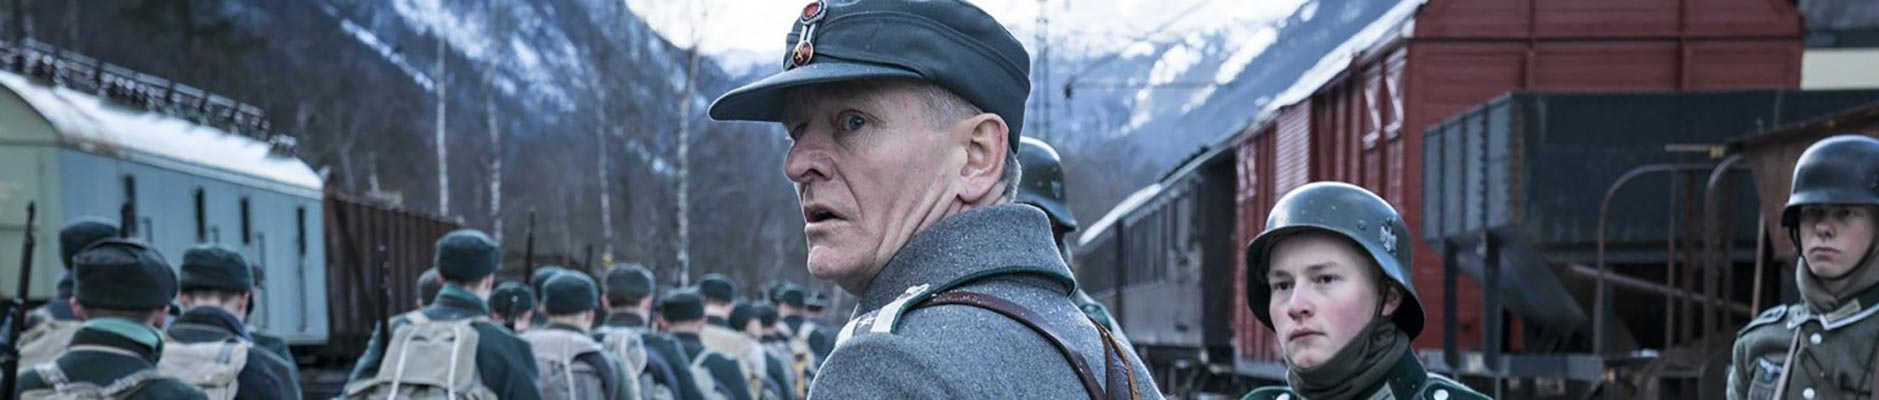 ‘Narvik’, de Netflix: otra película sobre la Segunda Guerra Mundial